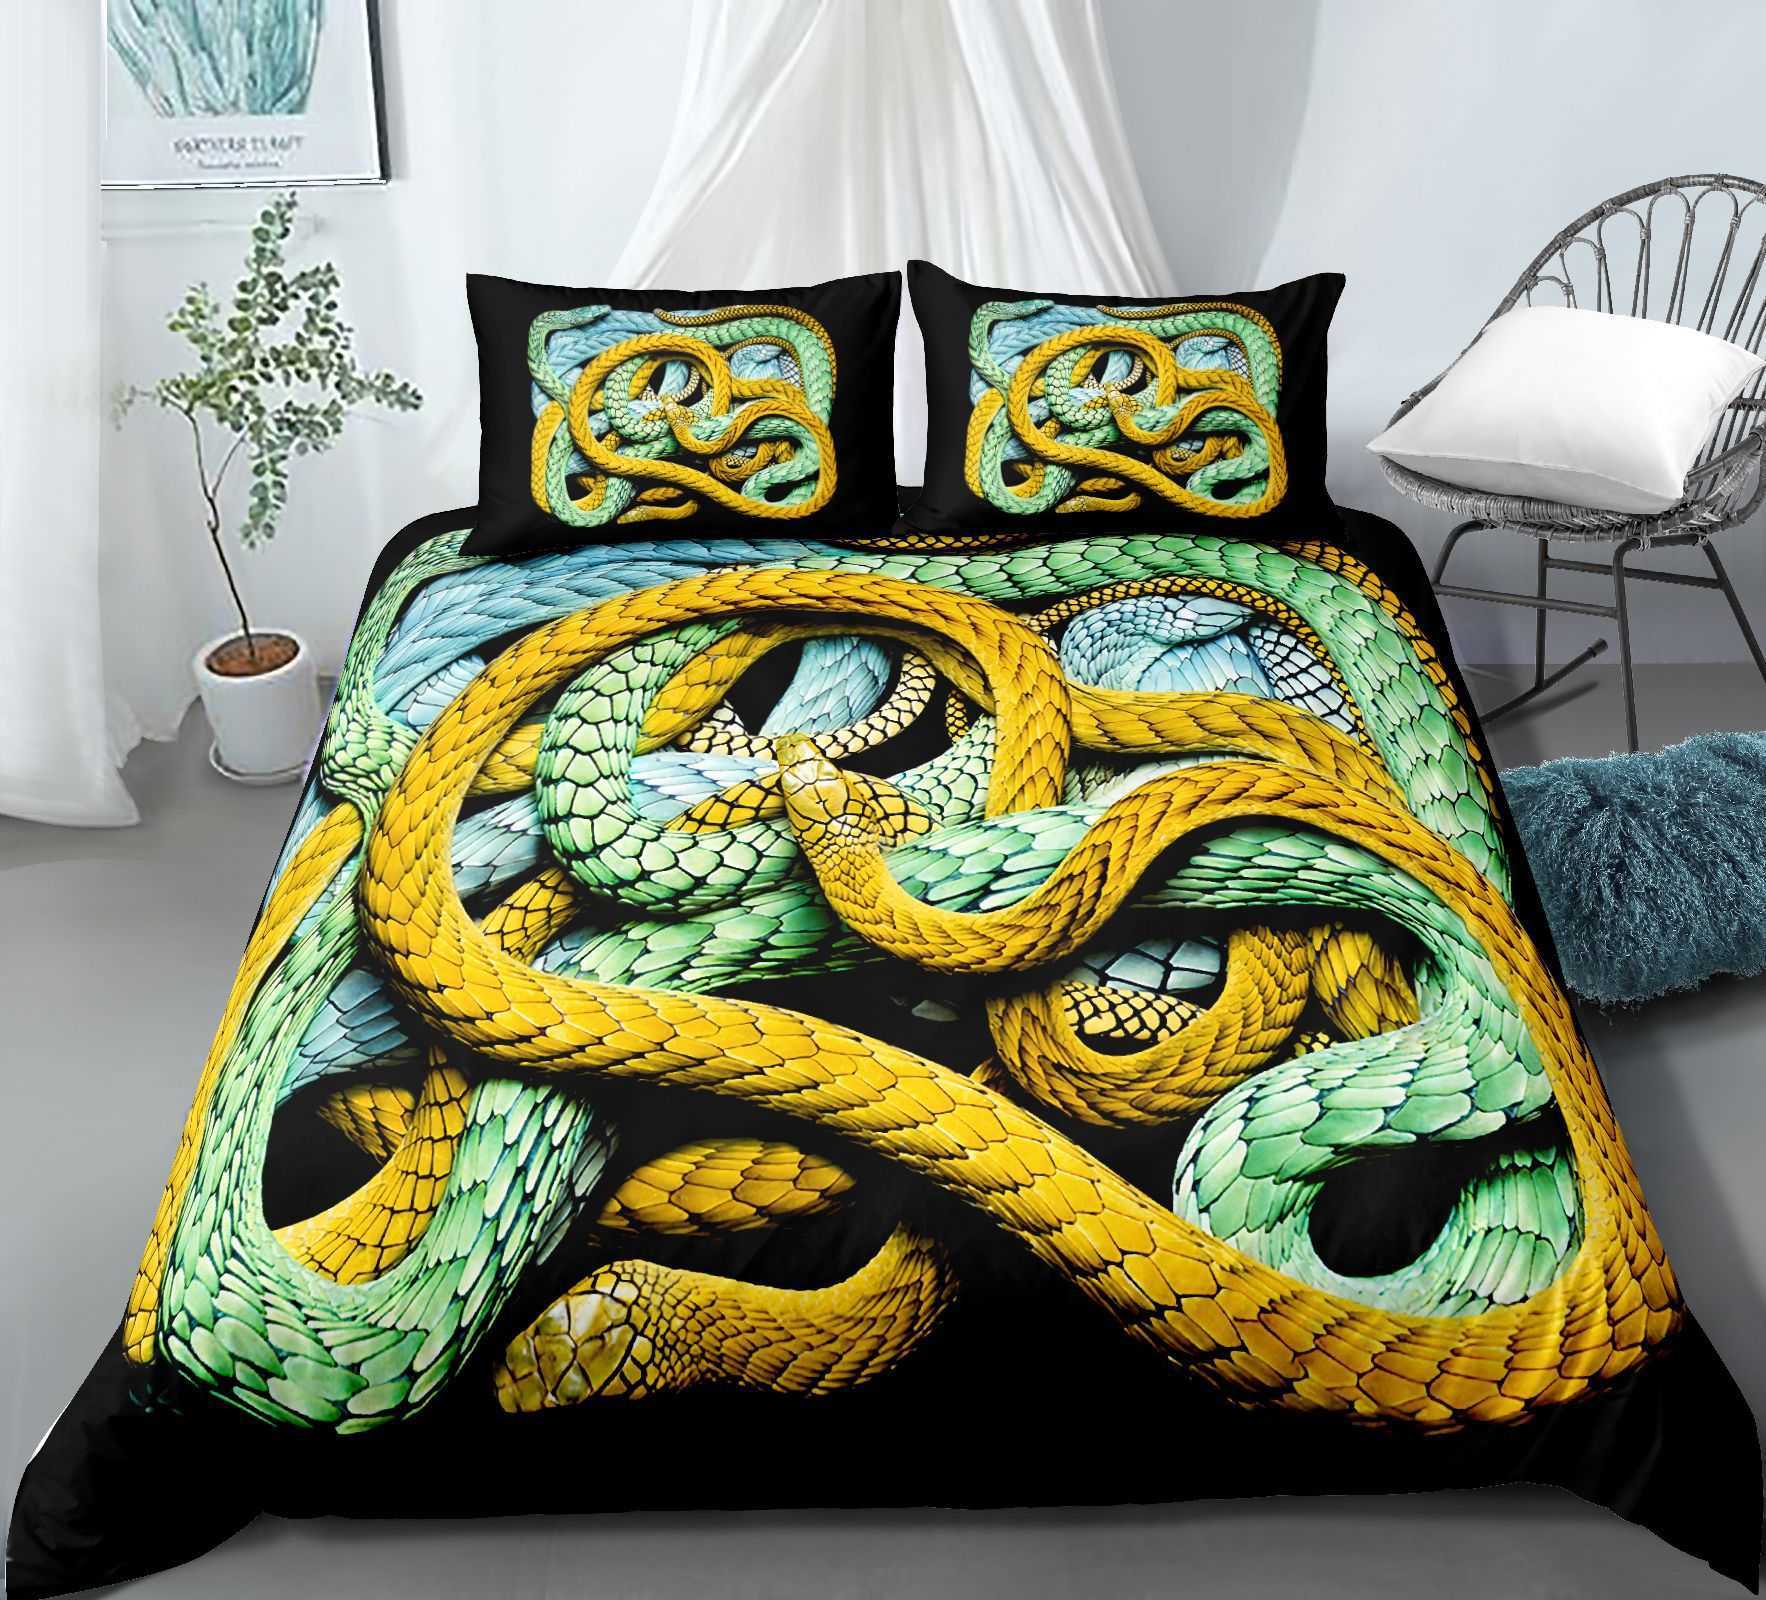 Juegos de cama Juego de cama estilo serpiente 3D para dormitorio, funda nórdica suave, colchas para cama, edredón y estuche cómodos R230901